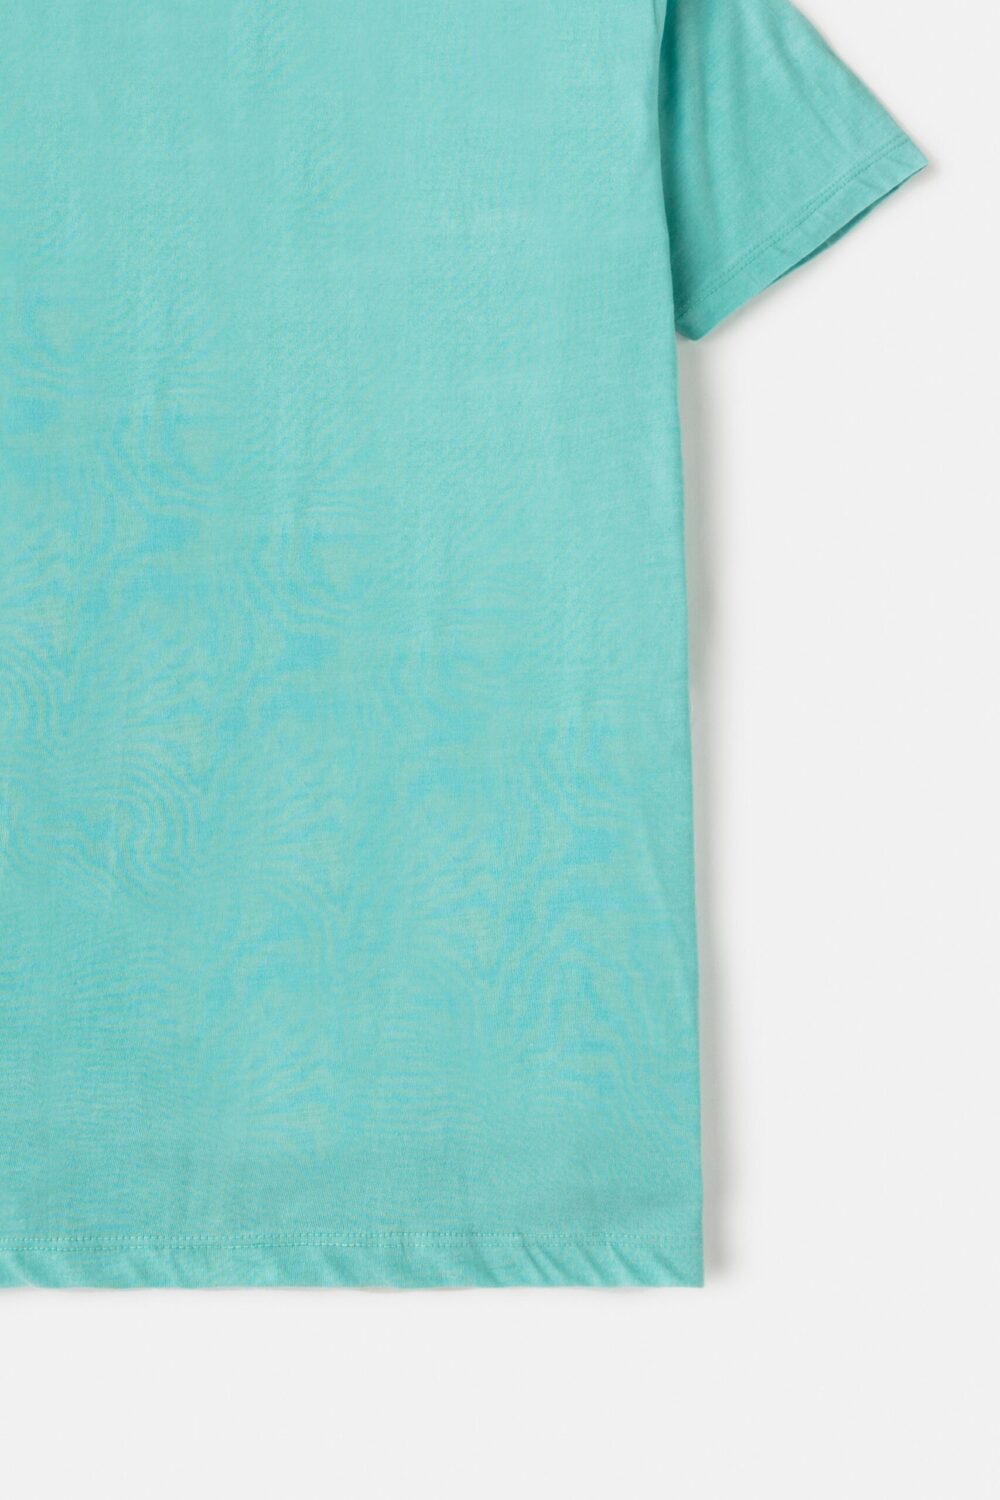 ZR Basic Cotton T Shirt – Ocean